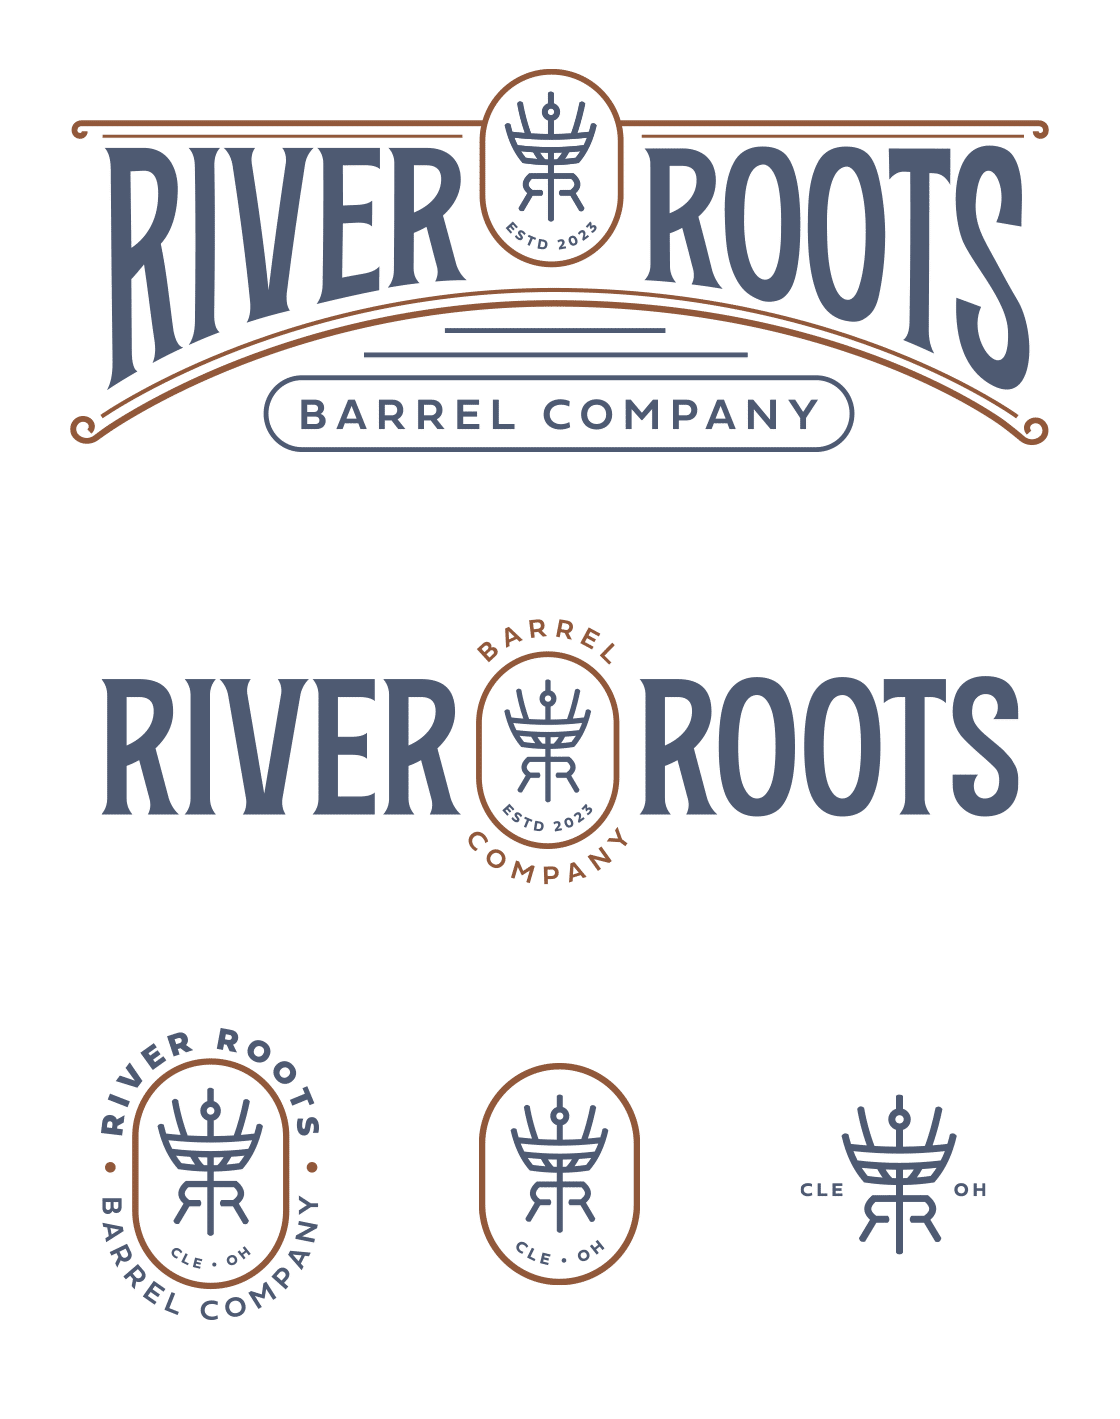 River Roots Barrel Company Logos